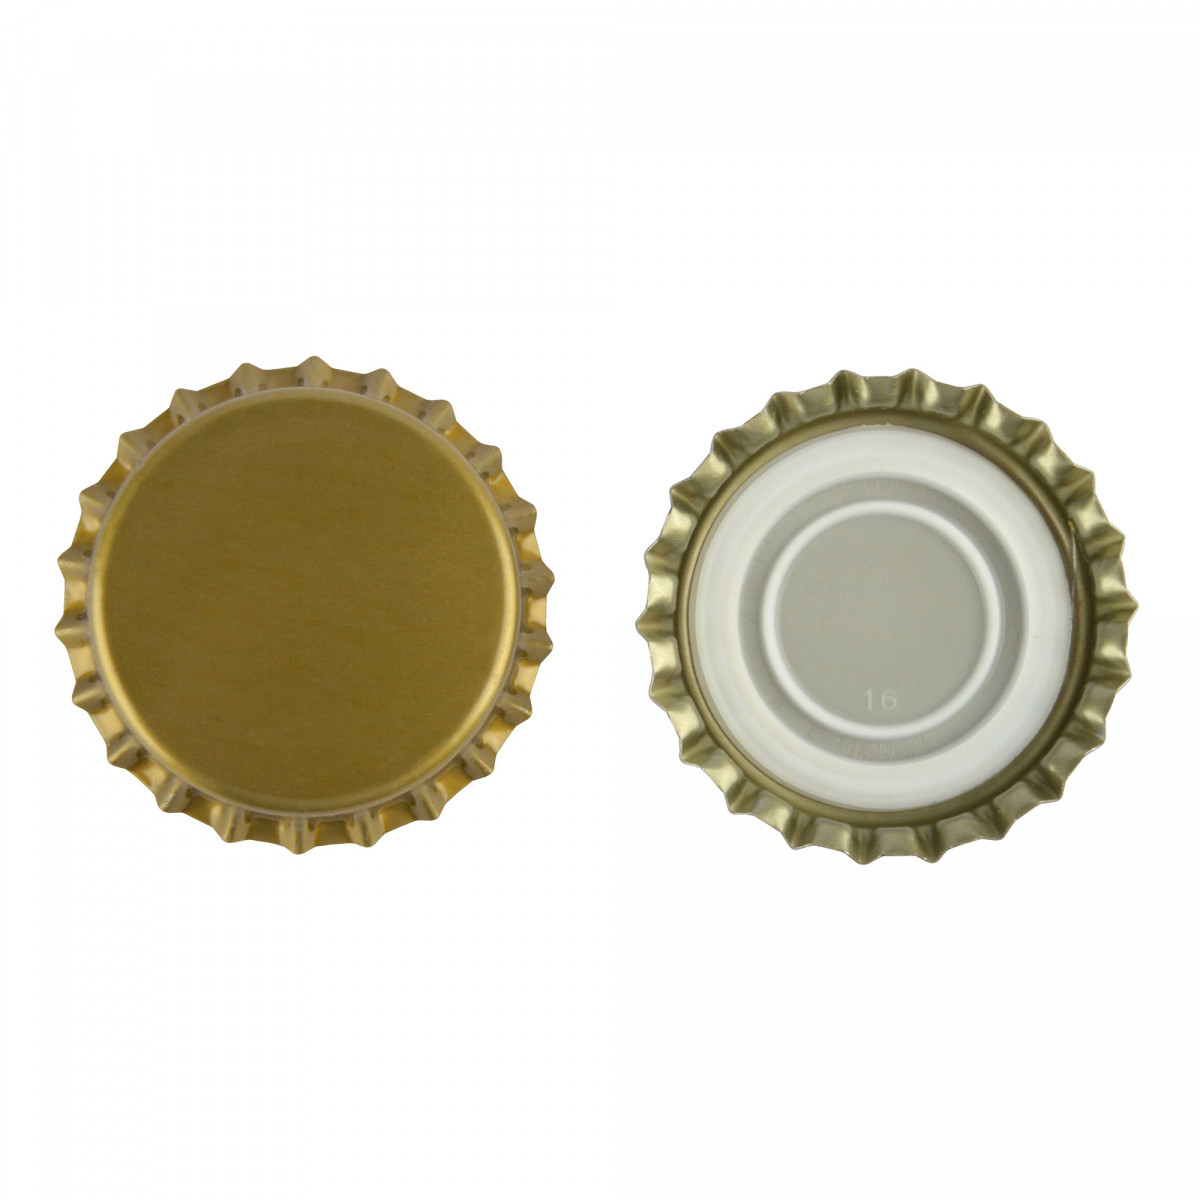 Capsules de bière 29 mm or - encart profilé - 1.000 pcs